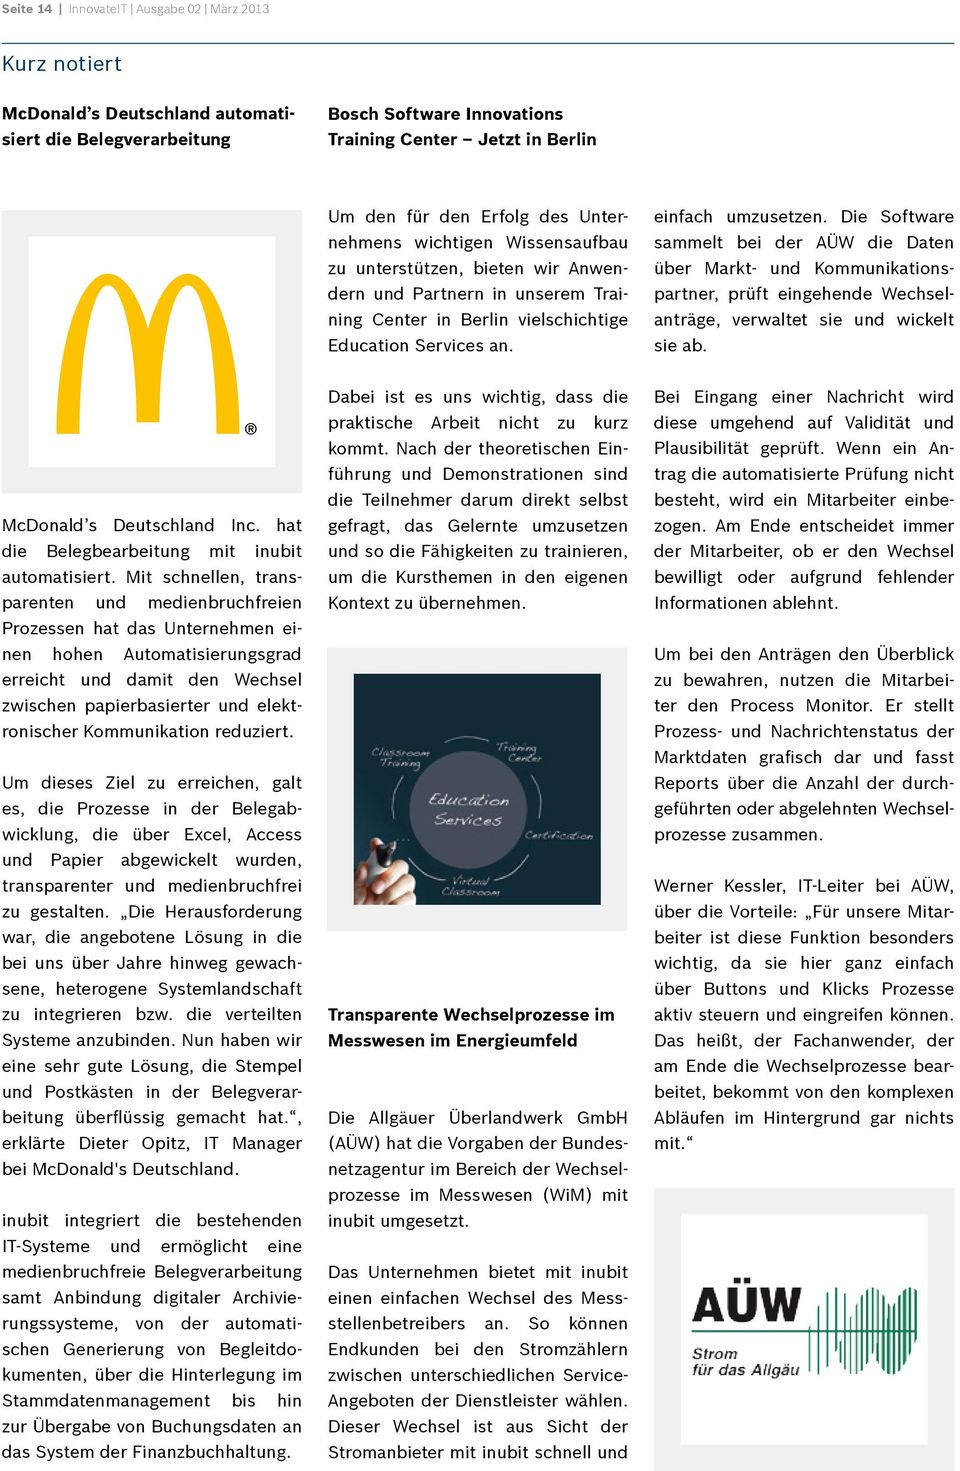 Die Software sammelt bei der AÜW die Daten über Markt- und Kommunikationspartner, prüft eingehende Wechselanträge, verwaltet sie und wickelt sie ab. McDonald s Deutschland Inc.